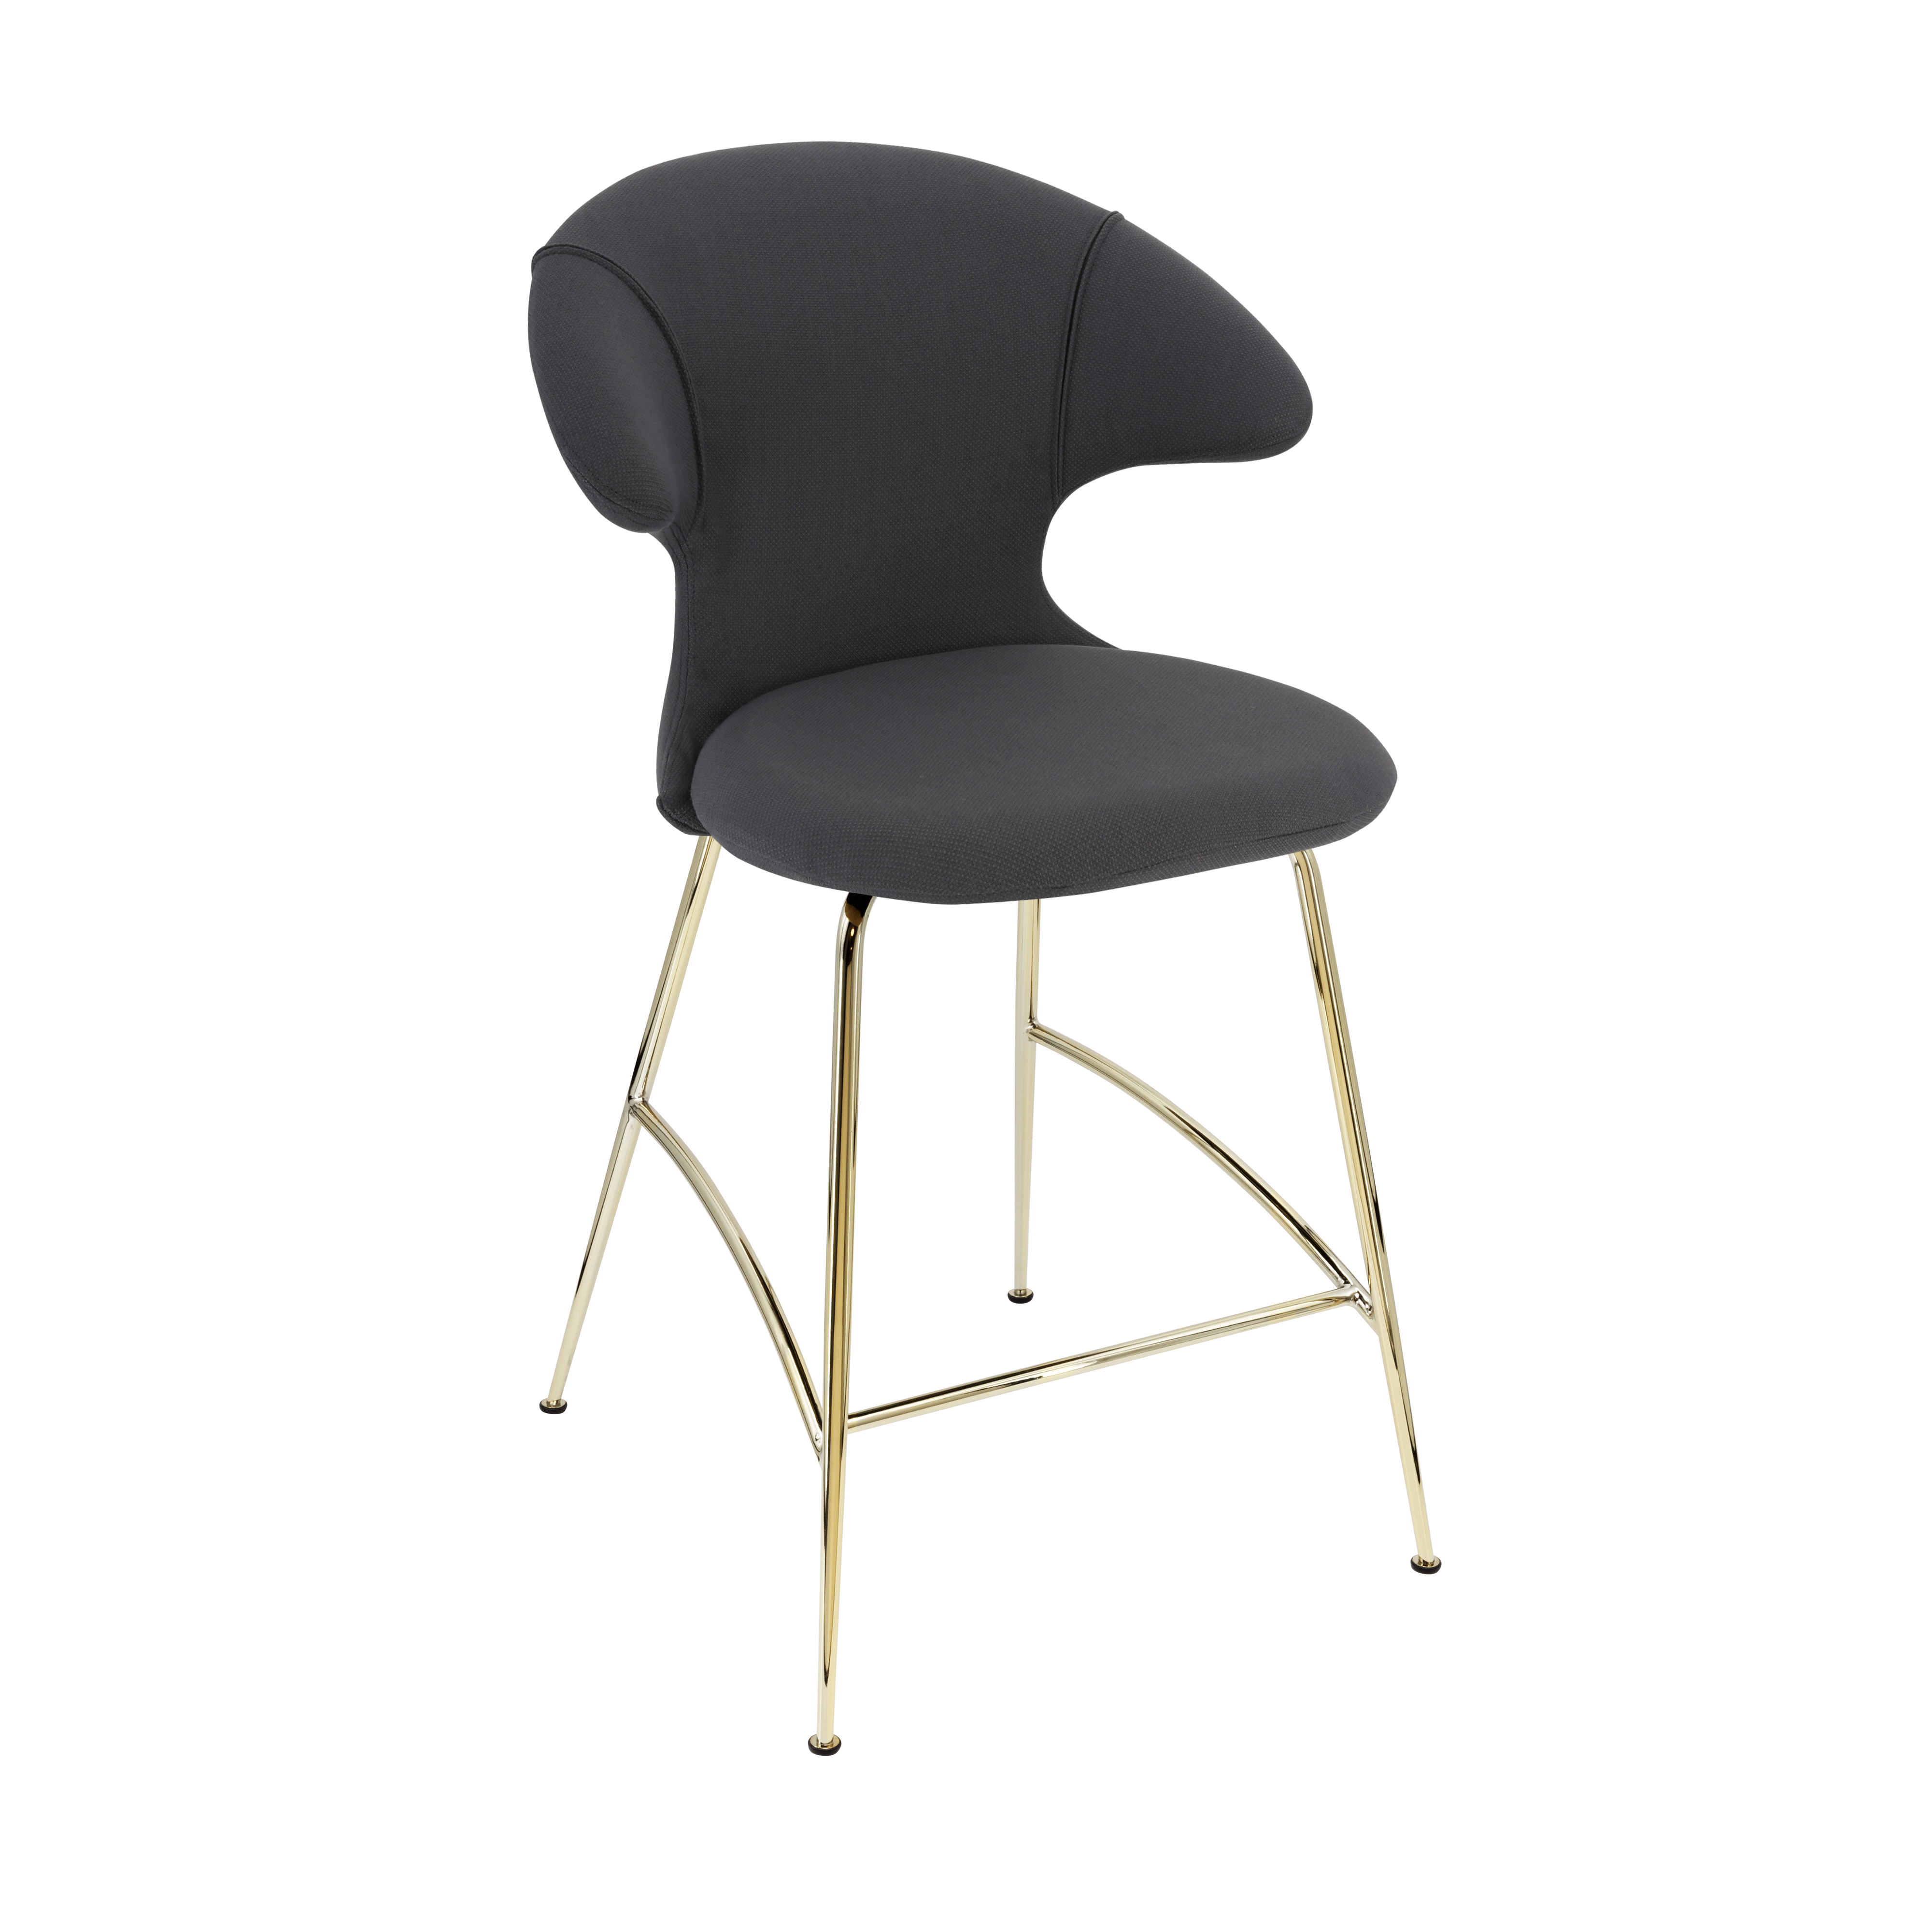 Time Flies Counter Stuhl in Shadow präsentiert im Onlineshop von KAQTU Design AG. Barstuhl mit Armlehne ist von Umage